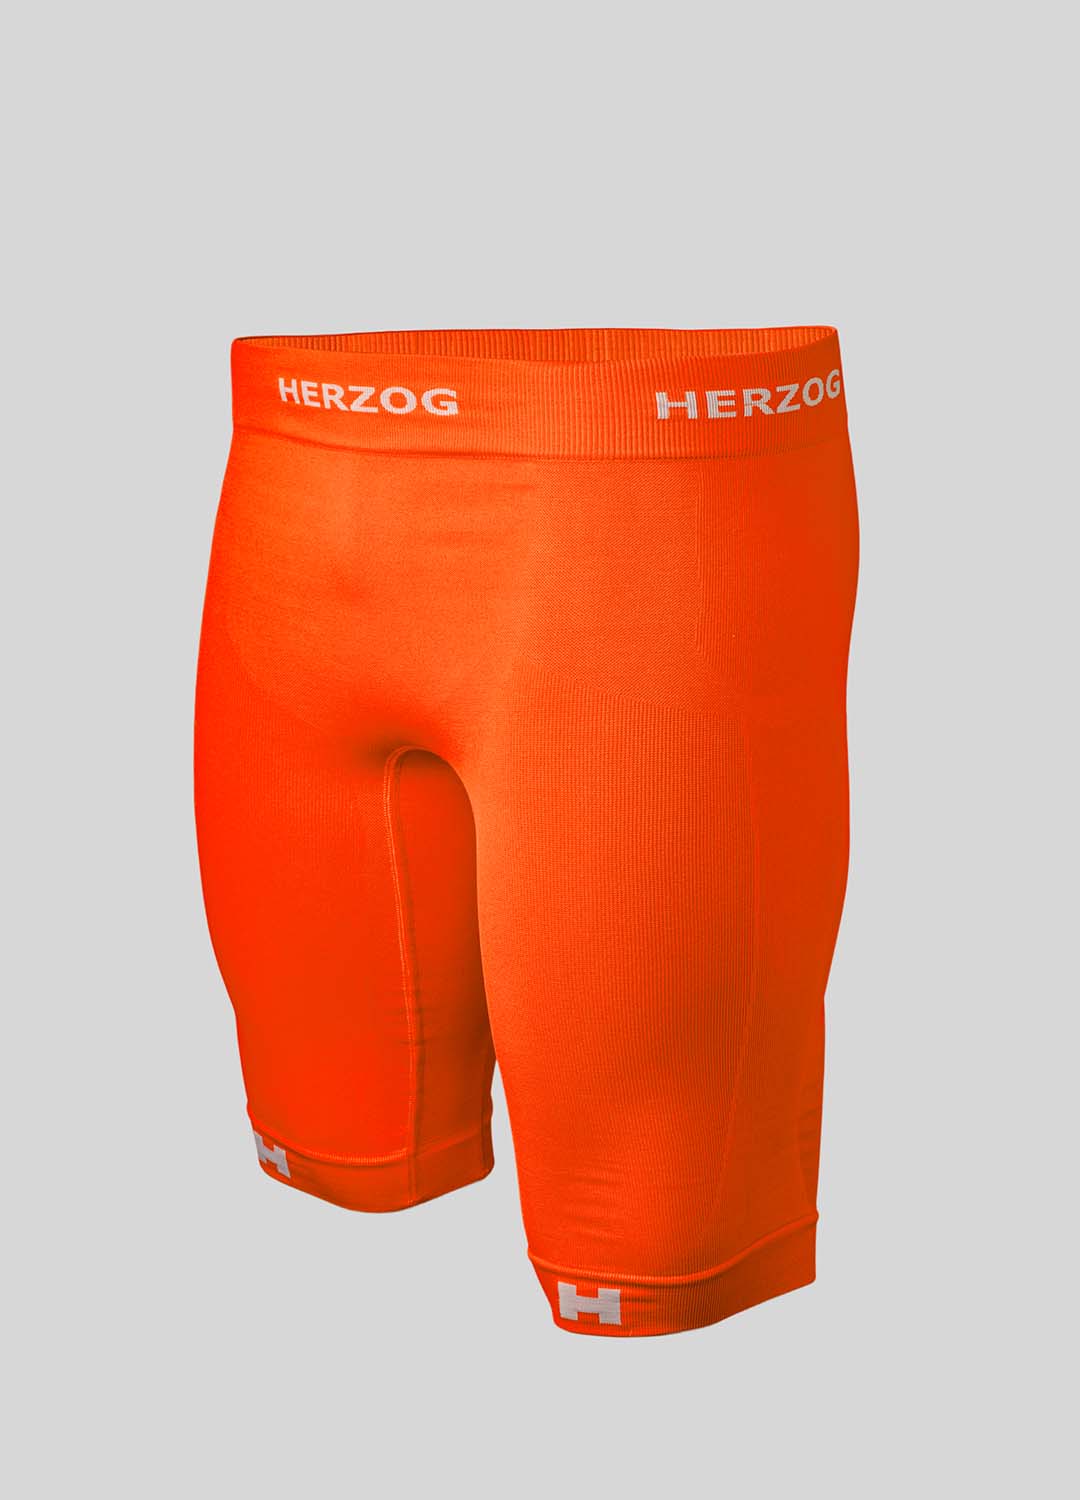 Leerling modus Me Herzog PRO sport compressie shorts oranje kopen | Herzog